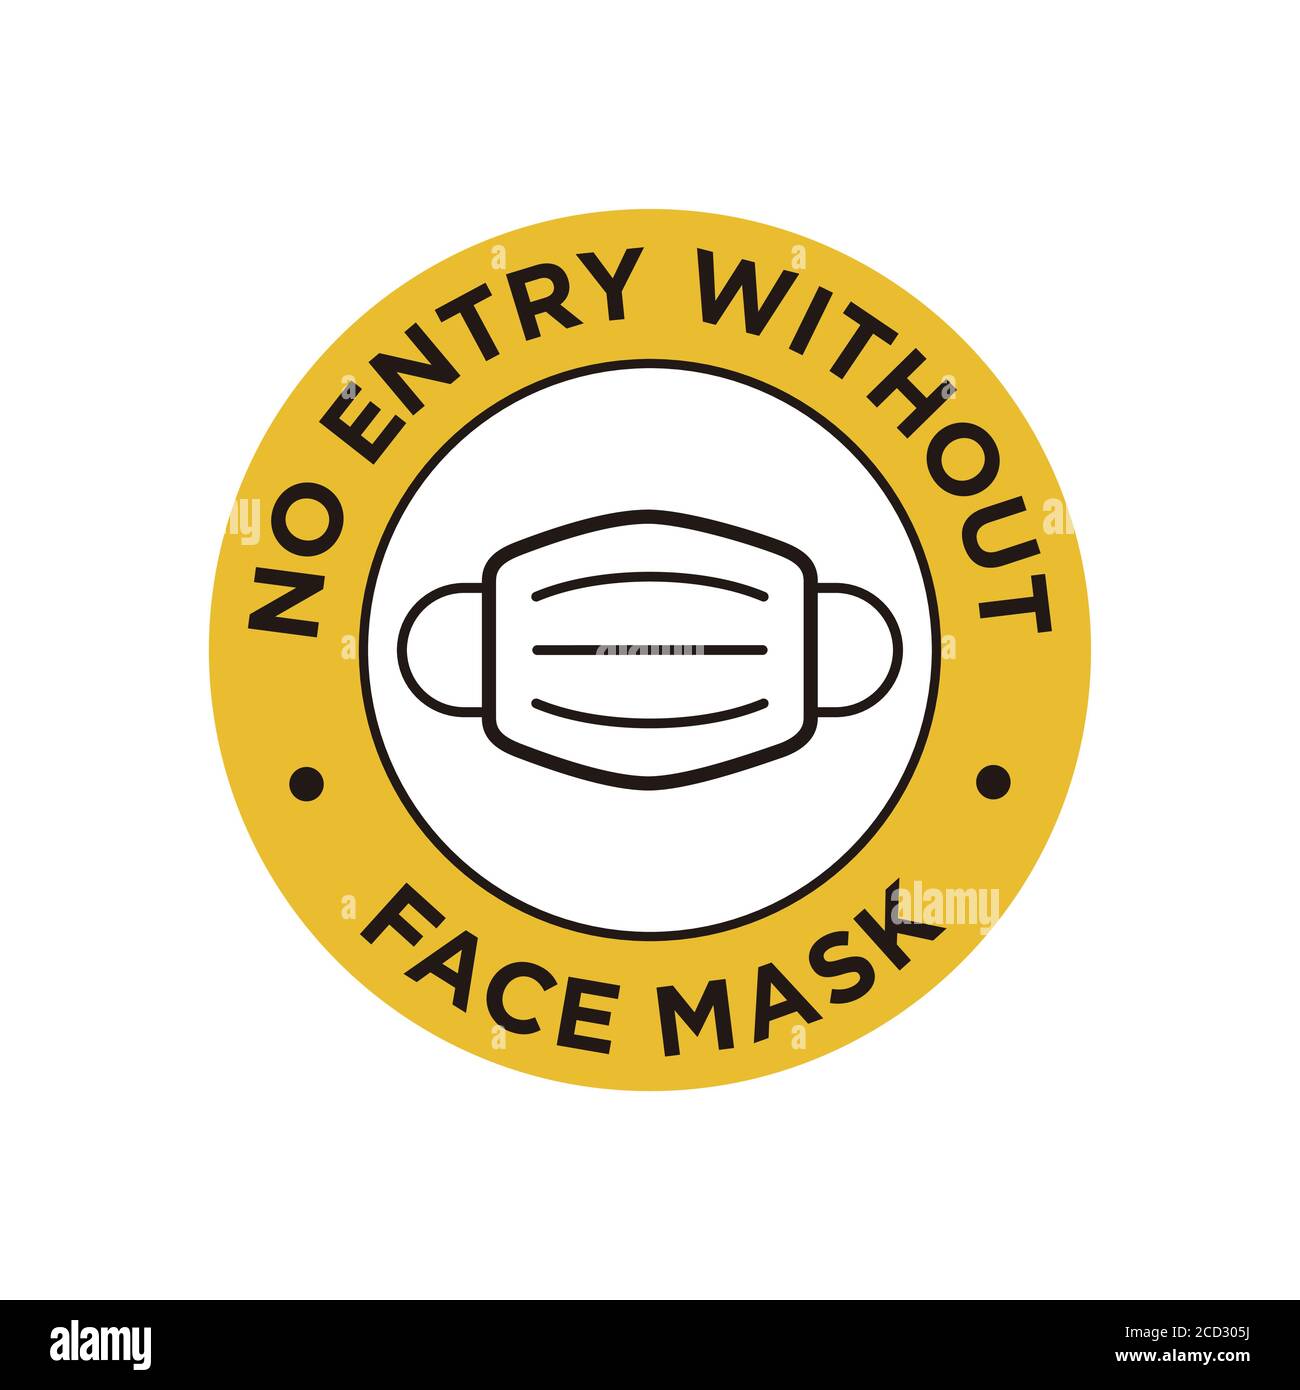 No hay entrada sin el icono de máscara. Símbolo redondo y amarillo sobre el uso obligatorio de la máscara facial para prevenir el coronavirus. Ilustración del Vector